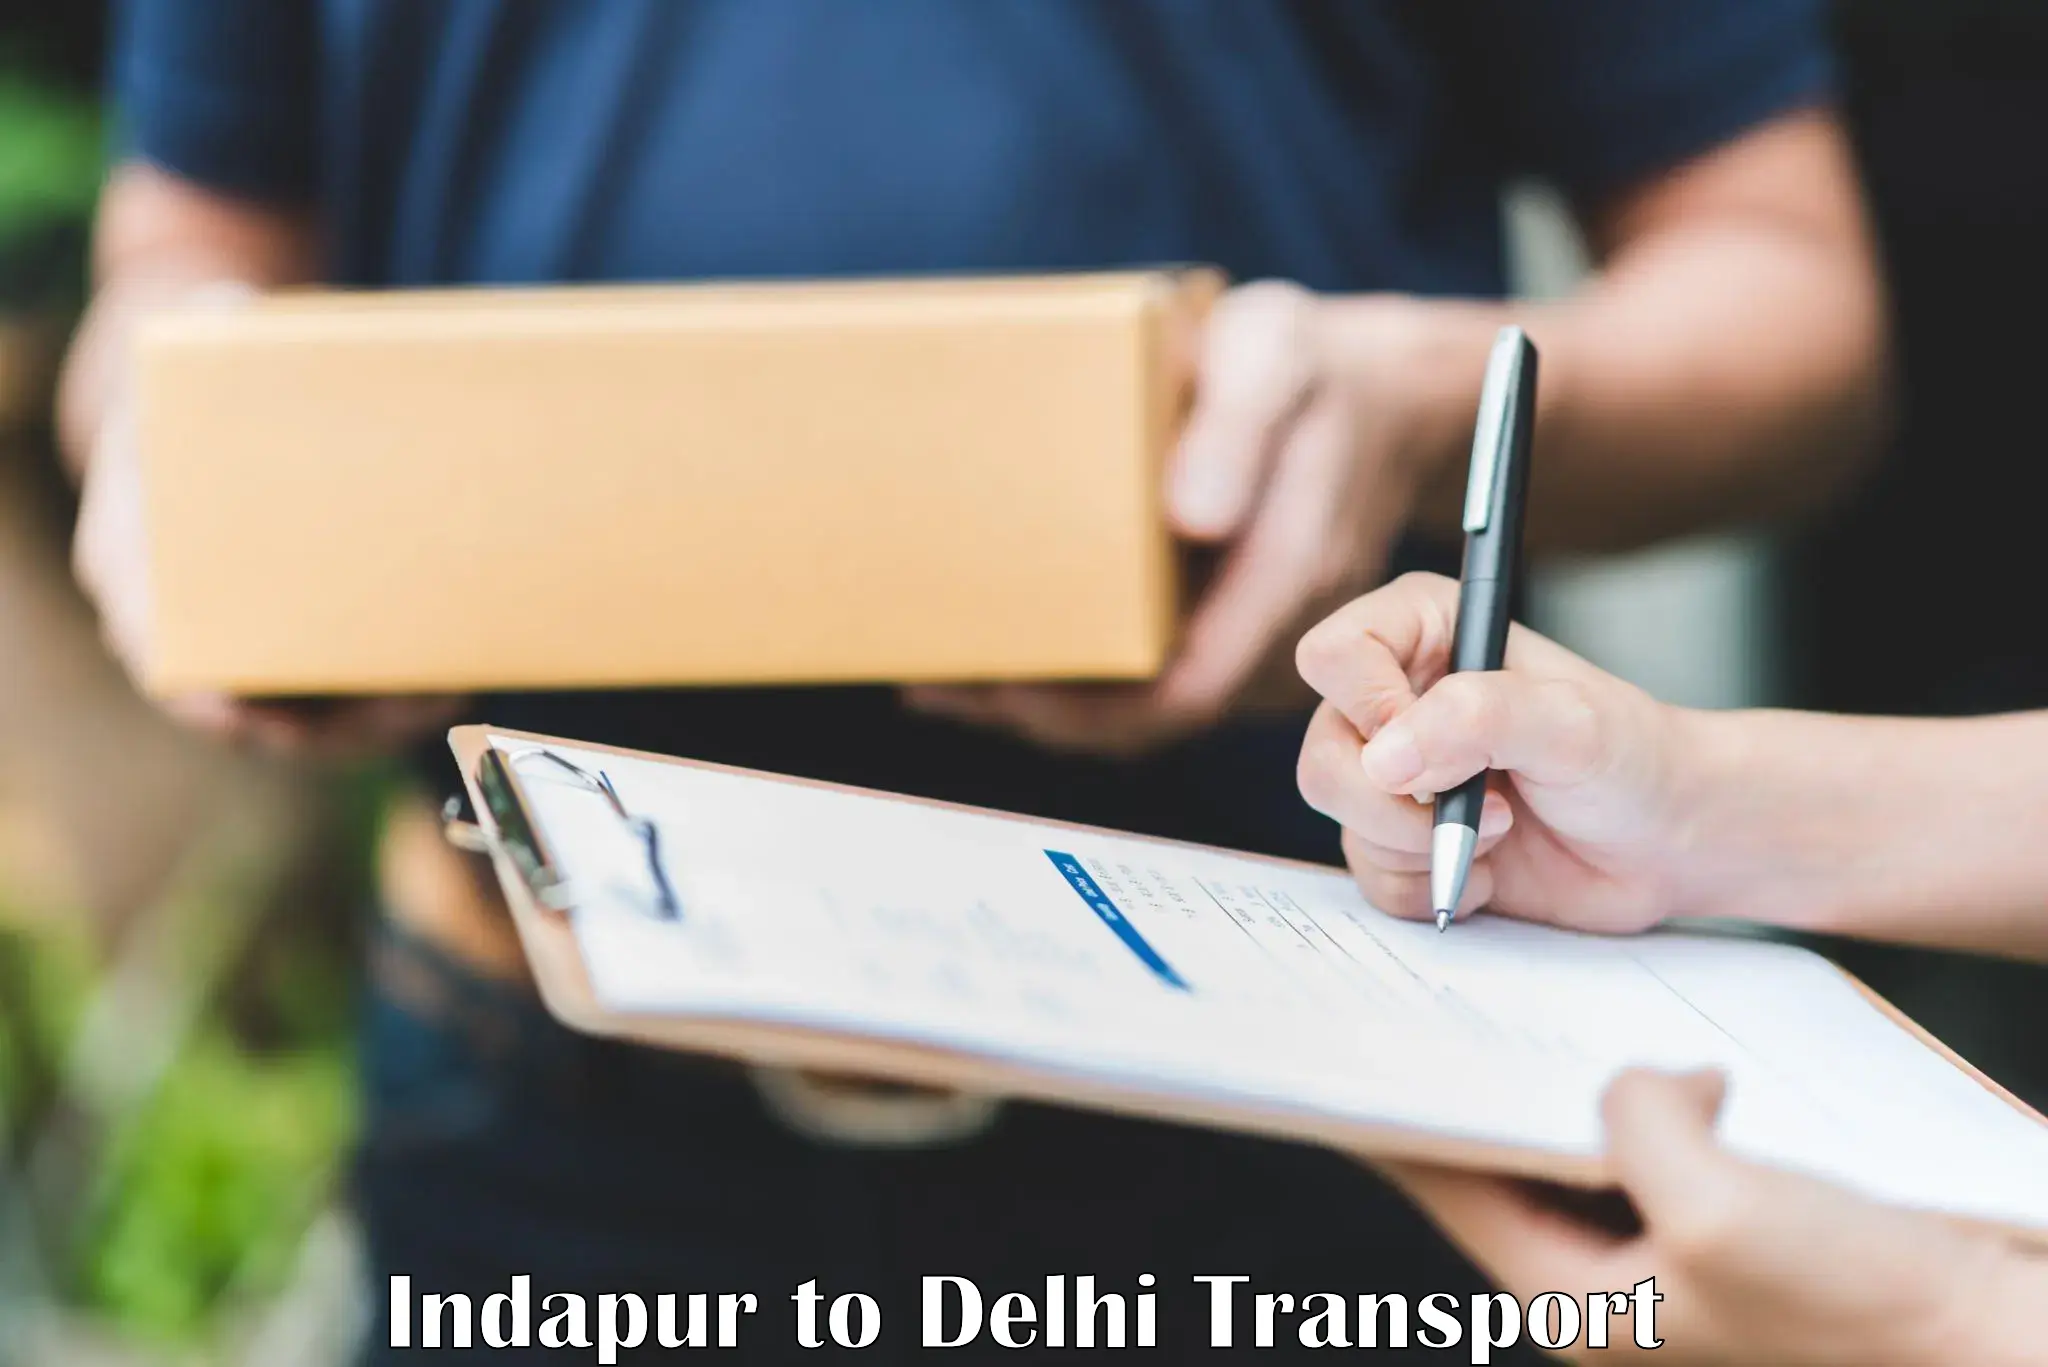 Road transport services Indapur to Delhi Technological University DTU